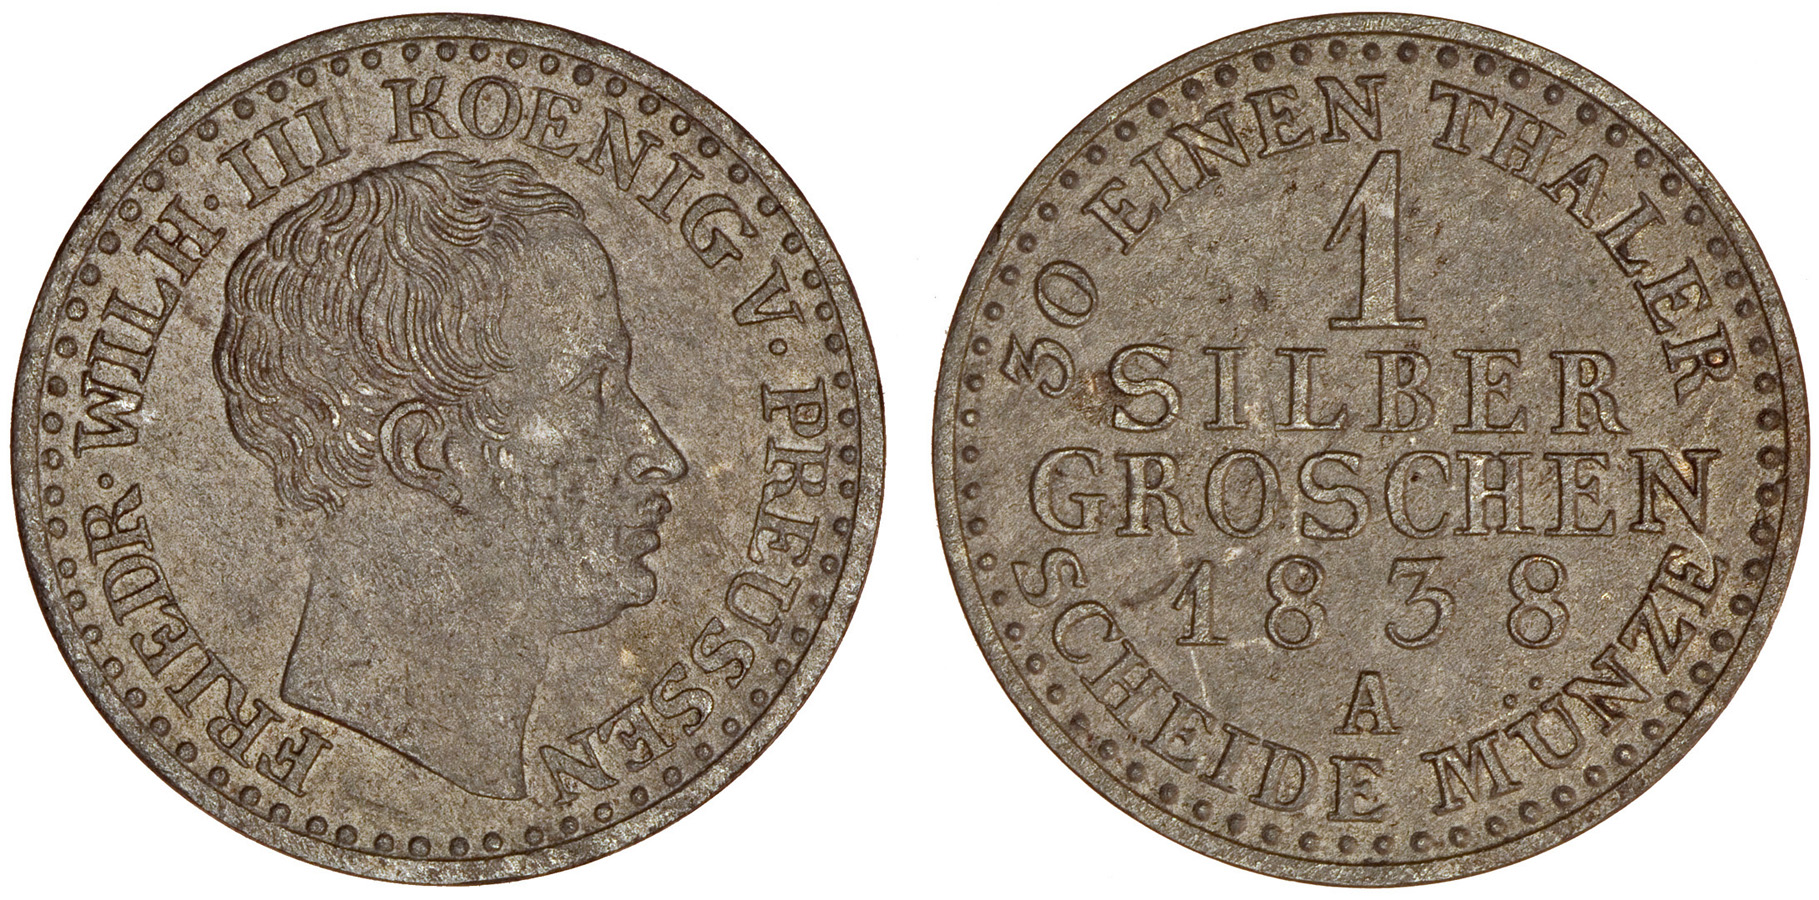 Prūsija. Frydrichas Vilhelmas III. 1 grašis. 1838 m. Sidabras. Ø 18,5 mm, Žemoji Panemunė, Šakių r.